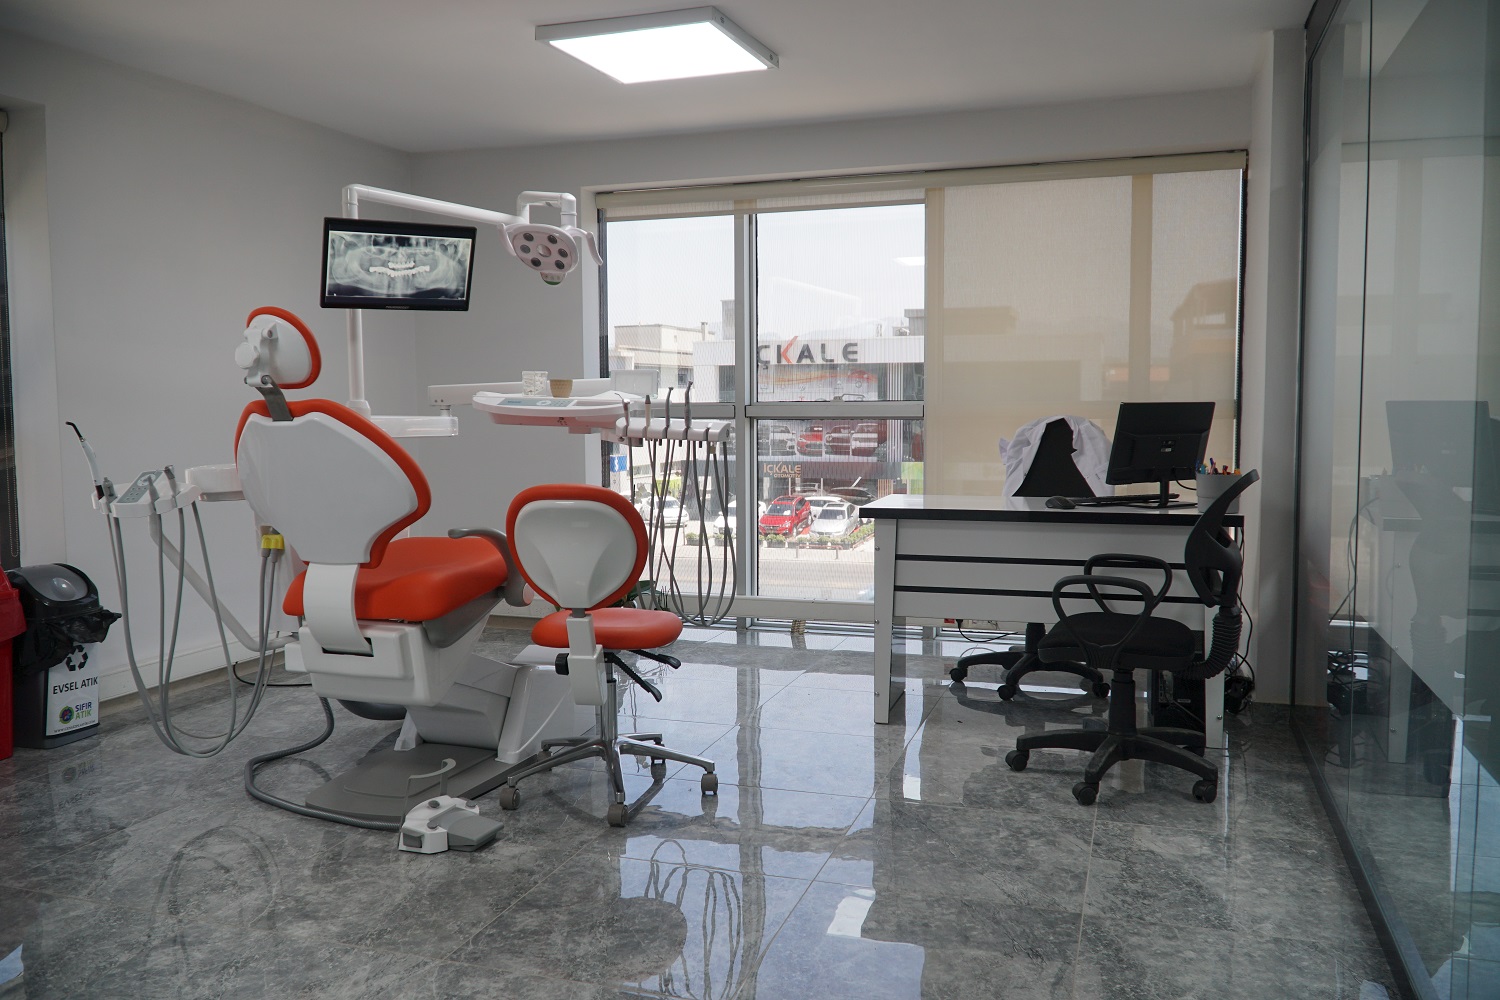 Dental Center İzmir